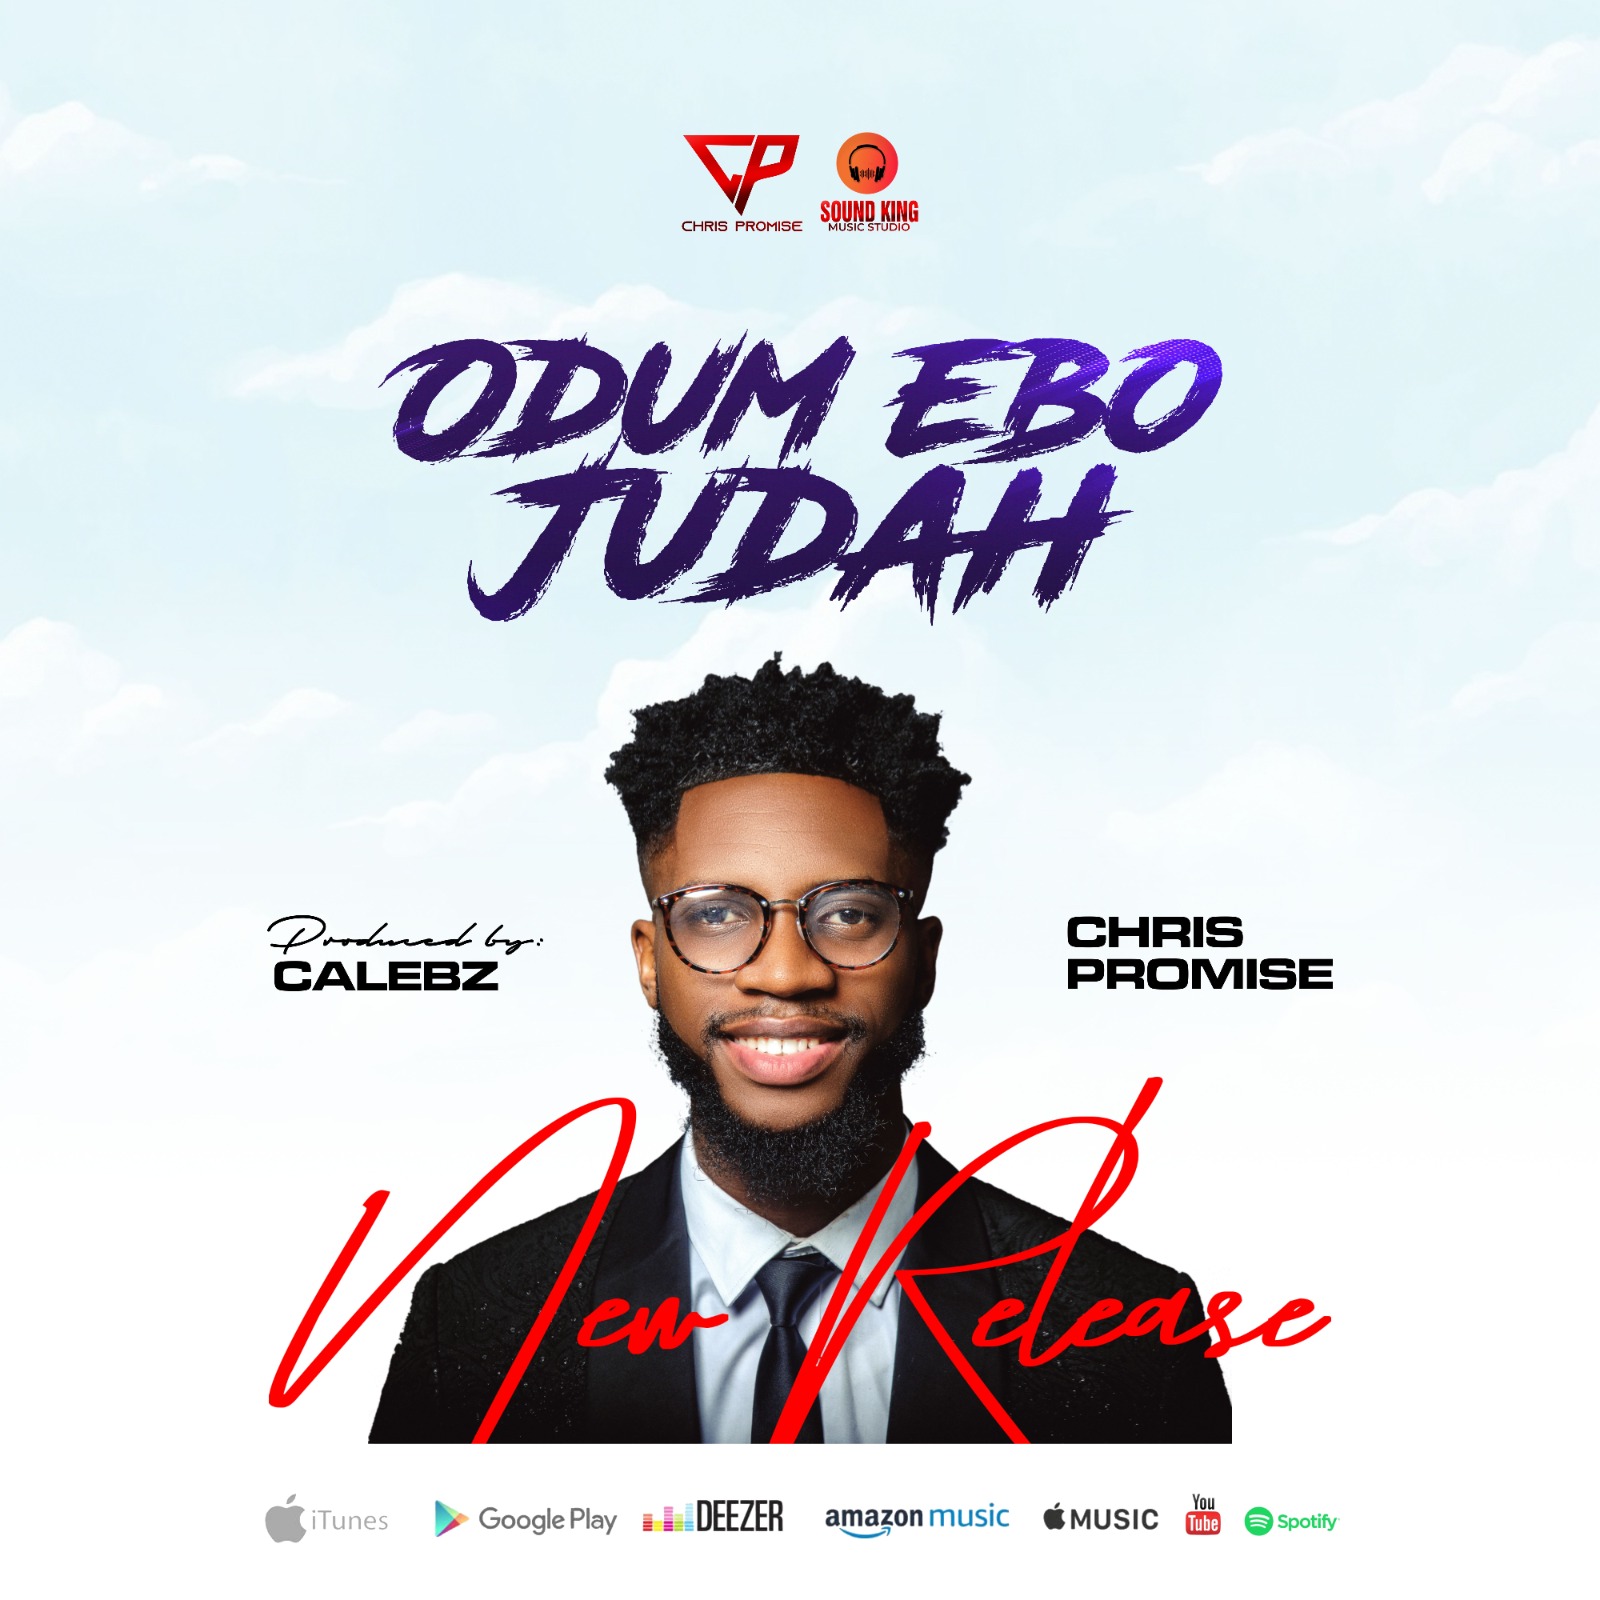 MUSIC: Chris Promise – ODUM EBO JUDAH